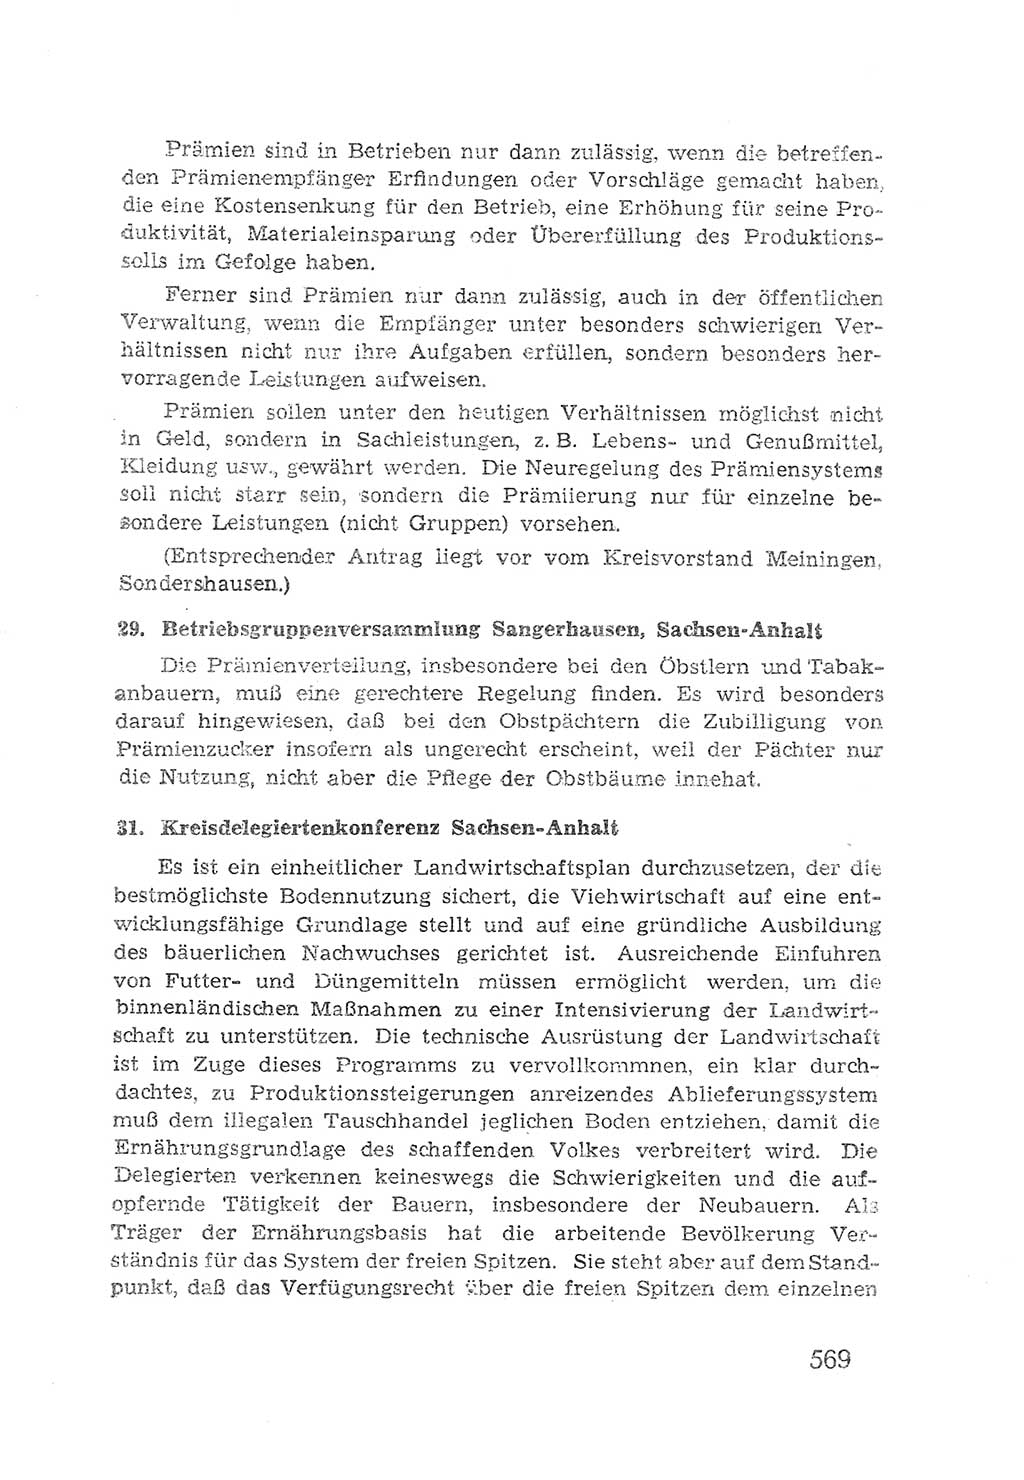 Protokoll der Verhandlungen des 2. Parteitages der Sozialistischen Einheitspartei Deutschlands (SED) [Sowjetische Besatzungszone (SBZ) Deutschlands] 1947, Seite 569 (Prot. Verh. 2. PT SED SBZ Dtl. 1947, S. 569)